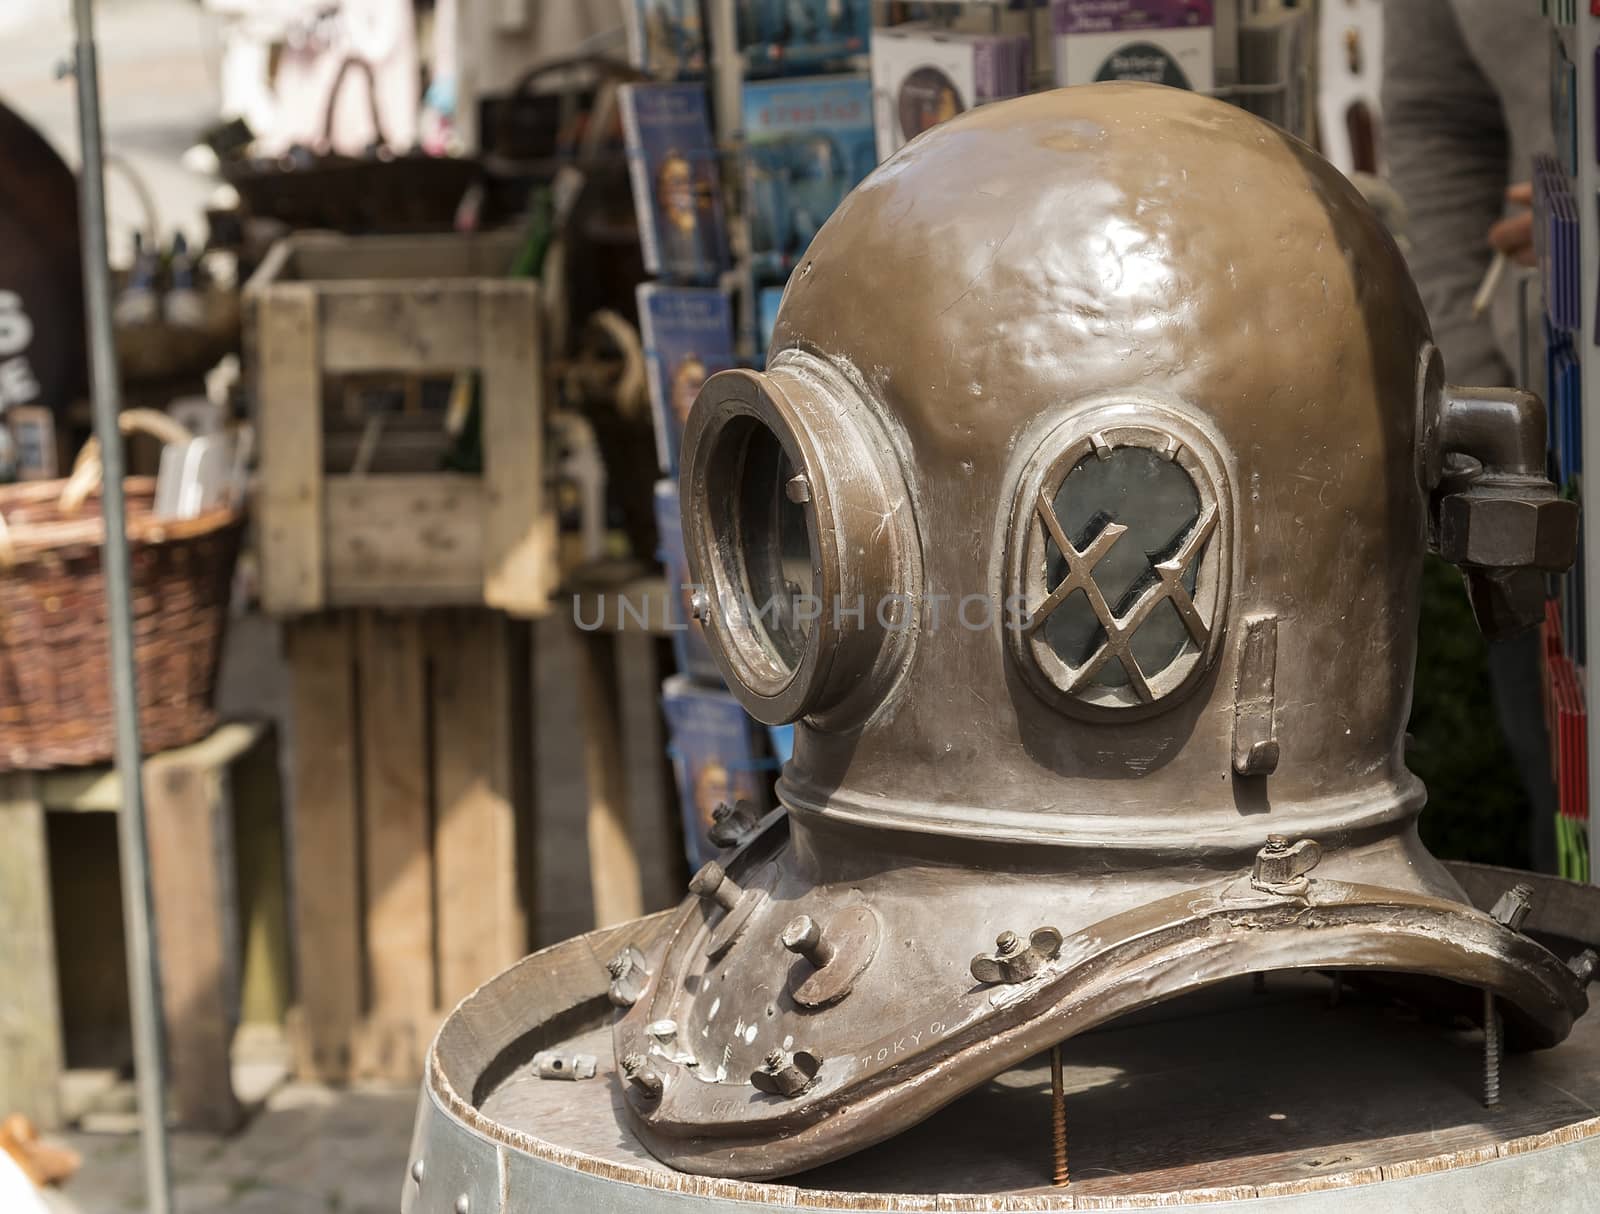 the helmet by lasseman